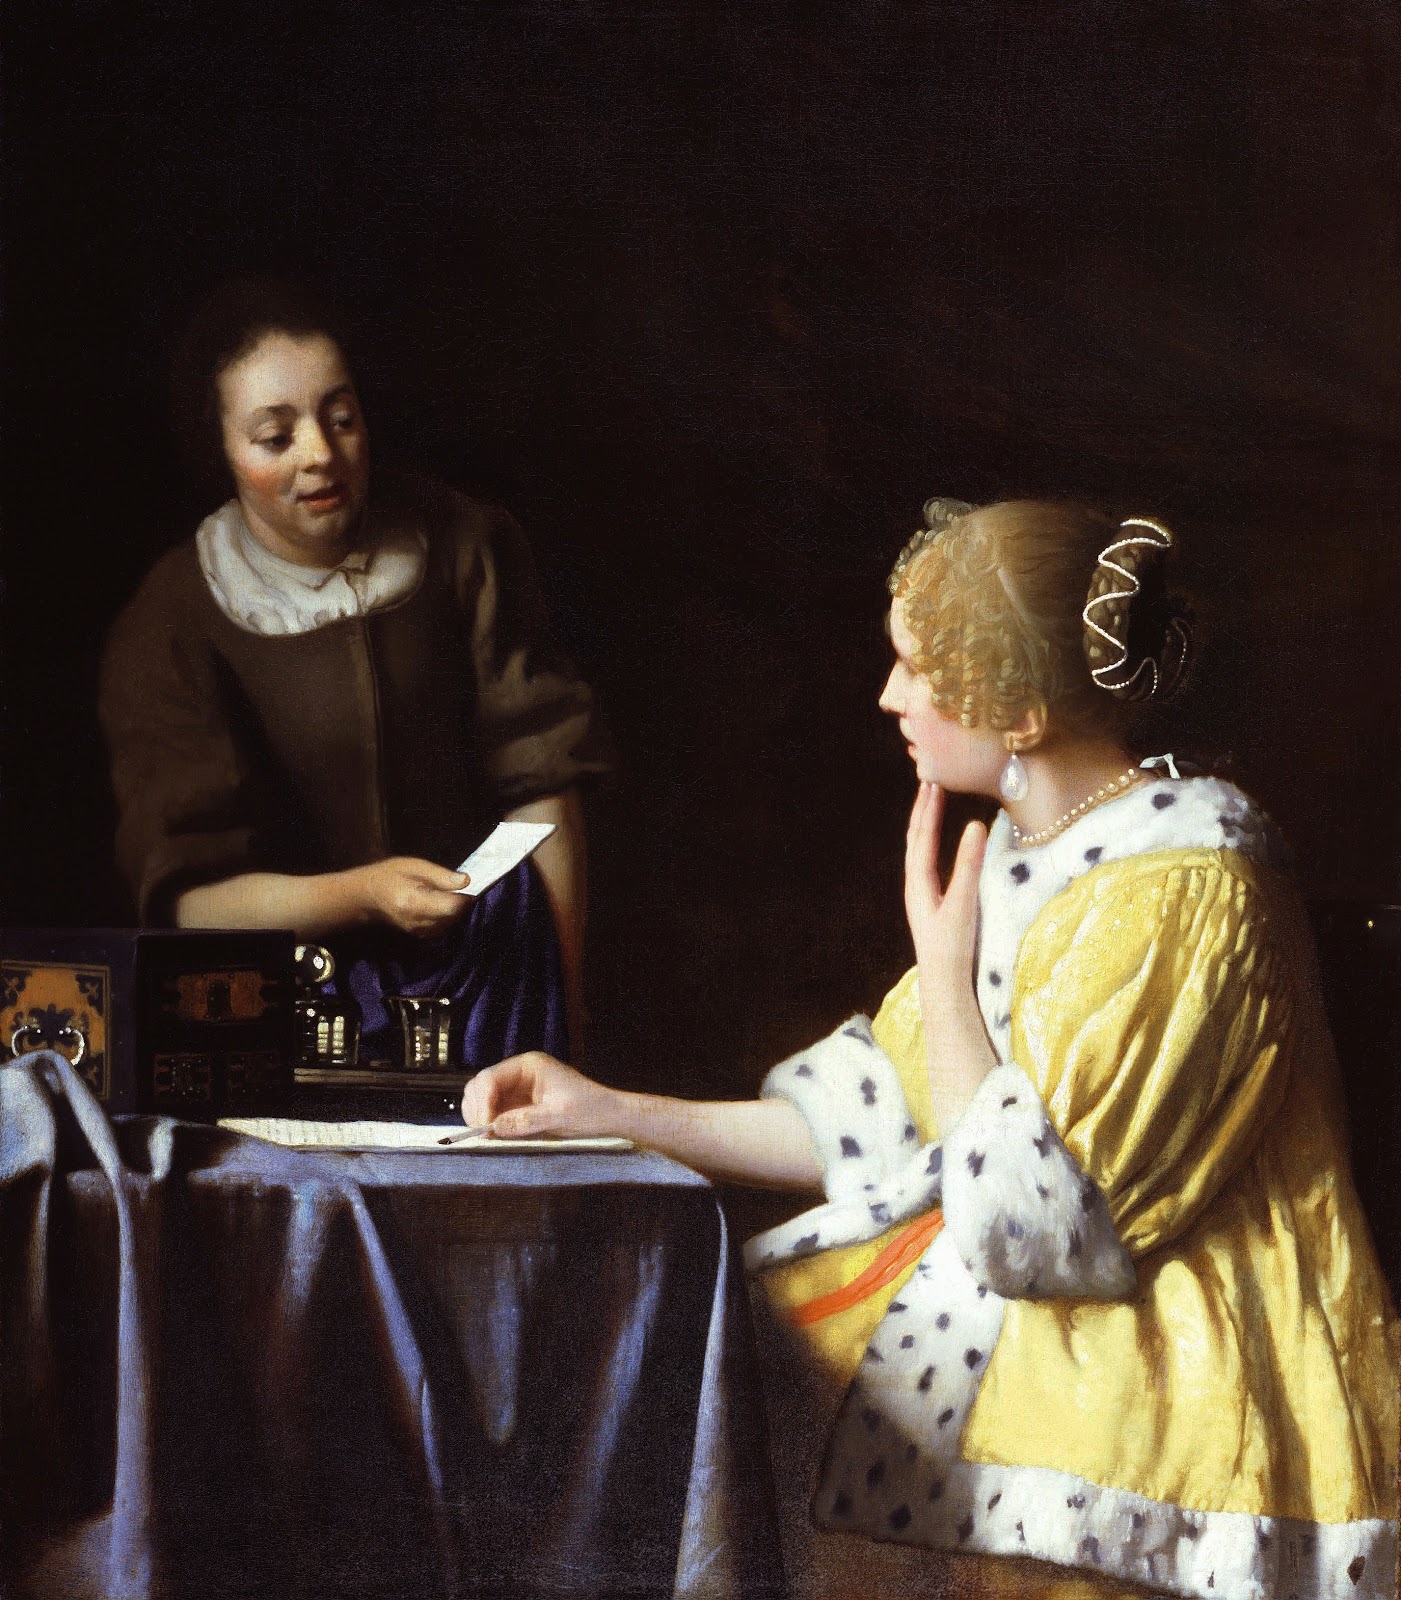 Johannes+Vermeer-1632-1675 (91).jpg